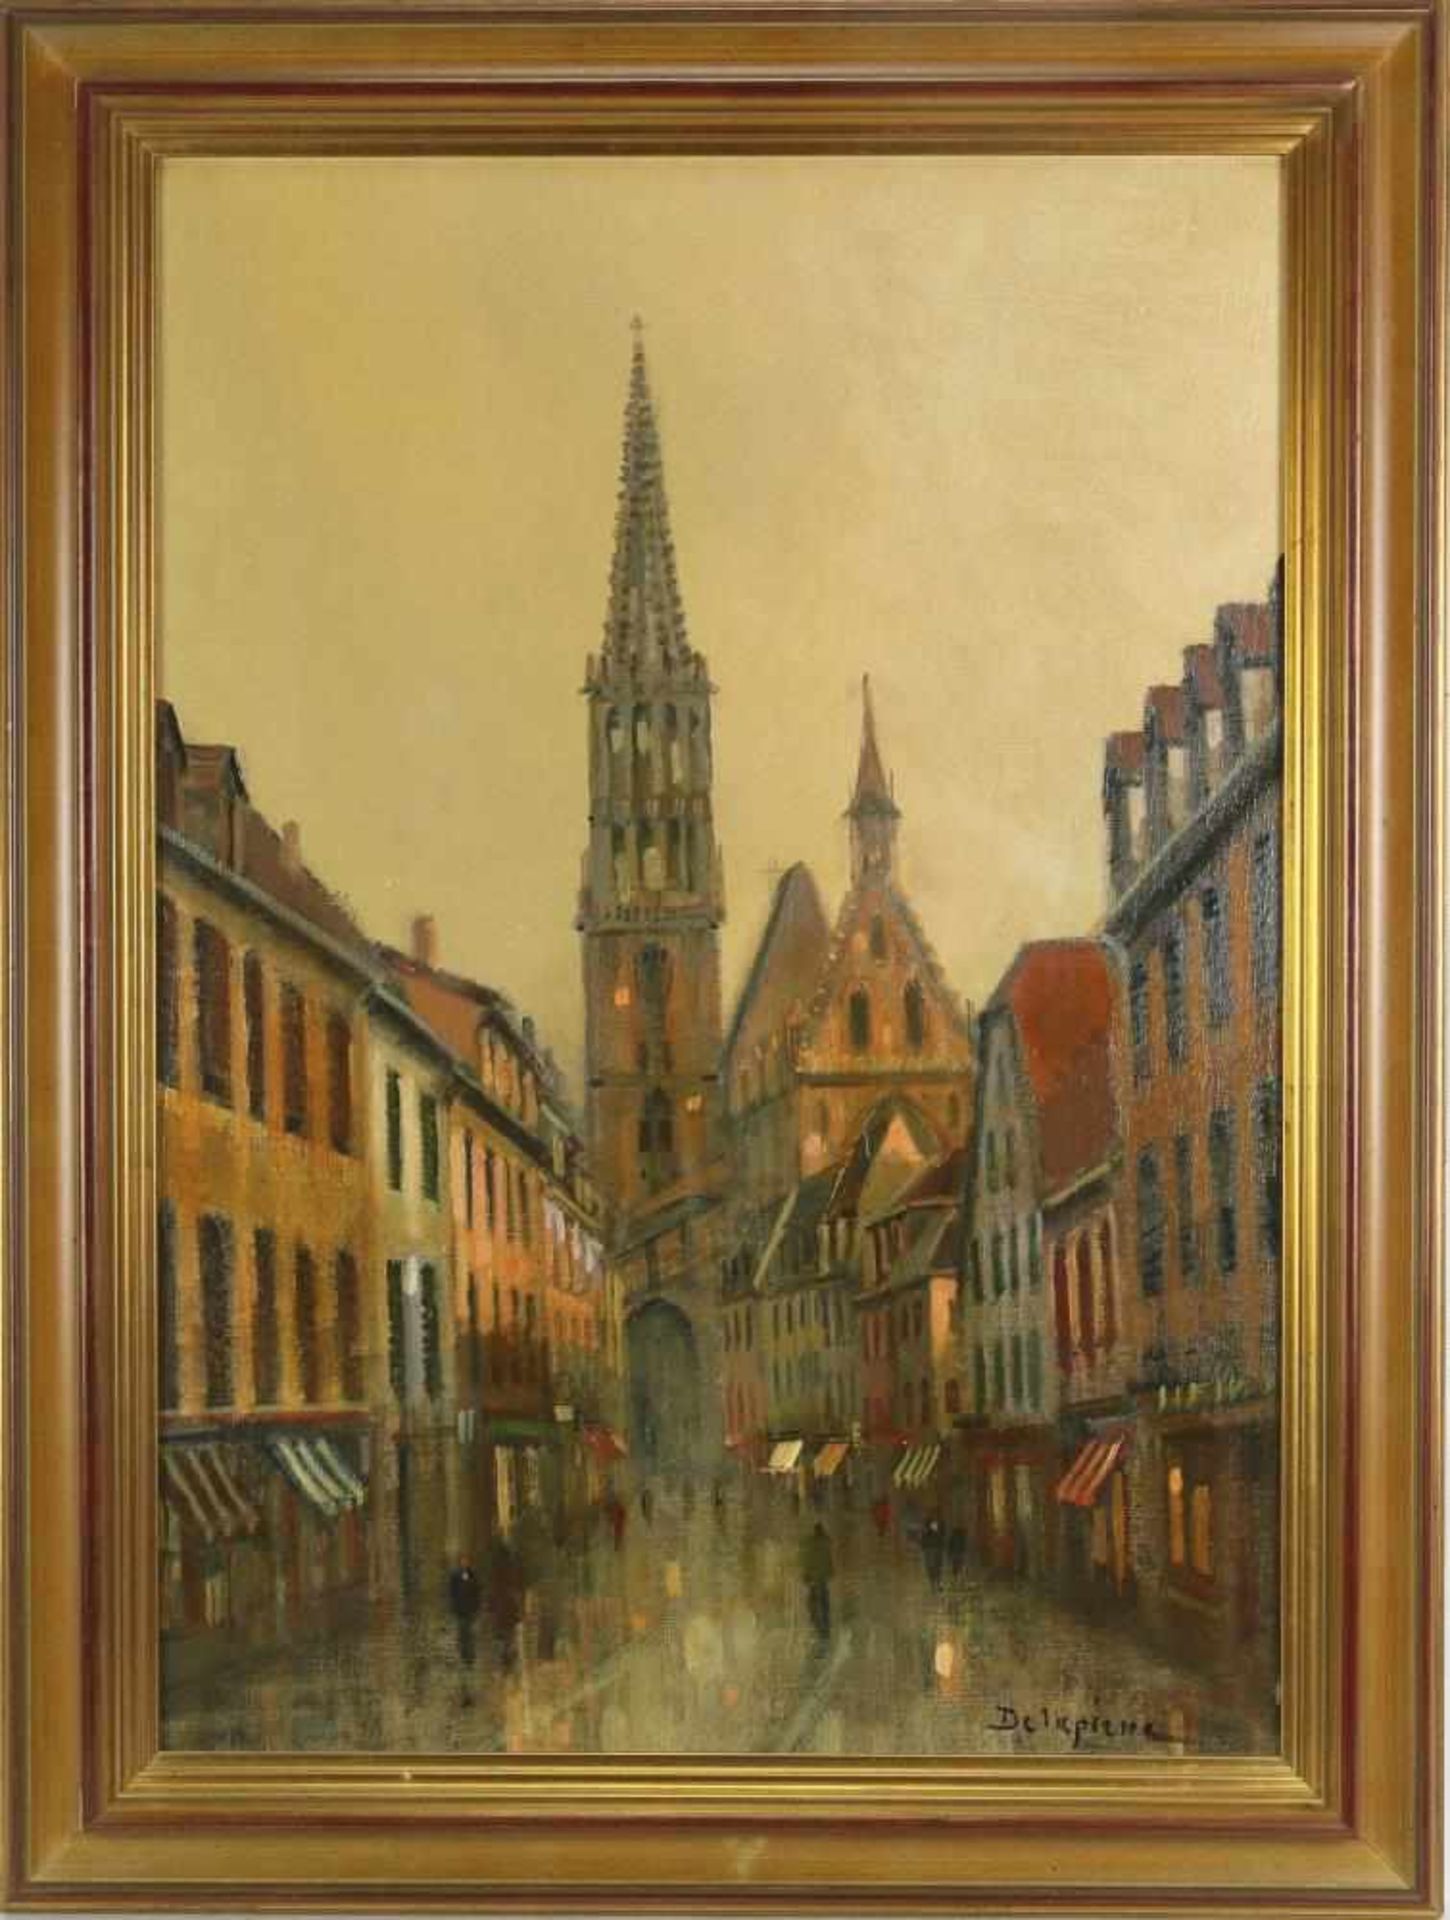 Delapierre, Roger * 1935 Genf. Blick in die Altstadt von Berrwiller im Elsass. Öl auf Leinwand. - Bild 2 aus 3